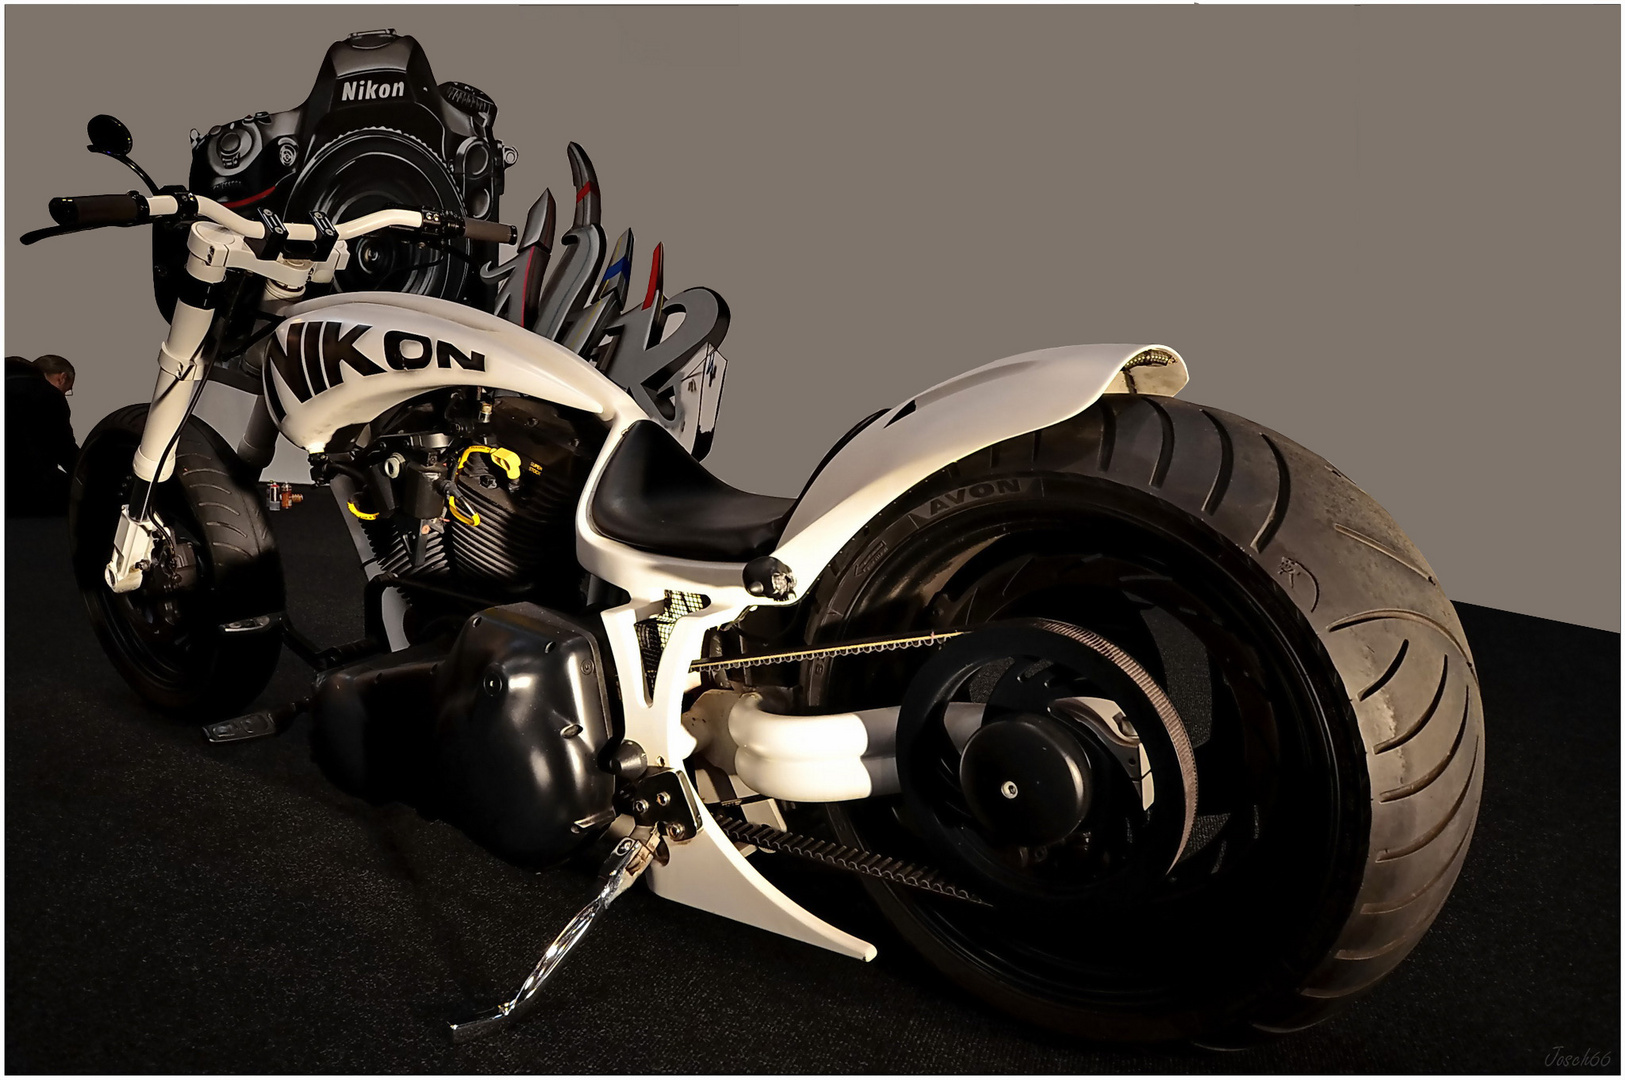 Nikon - Bike